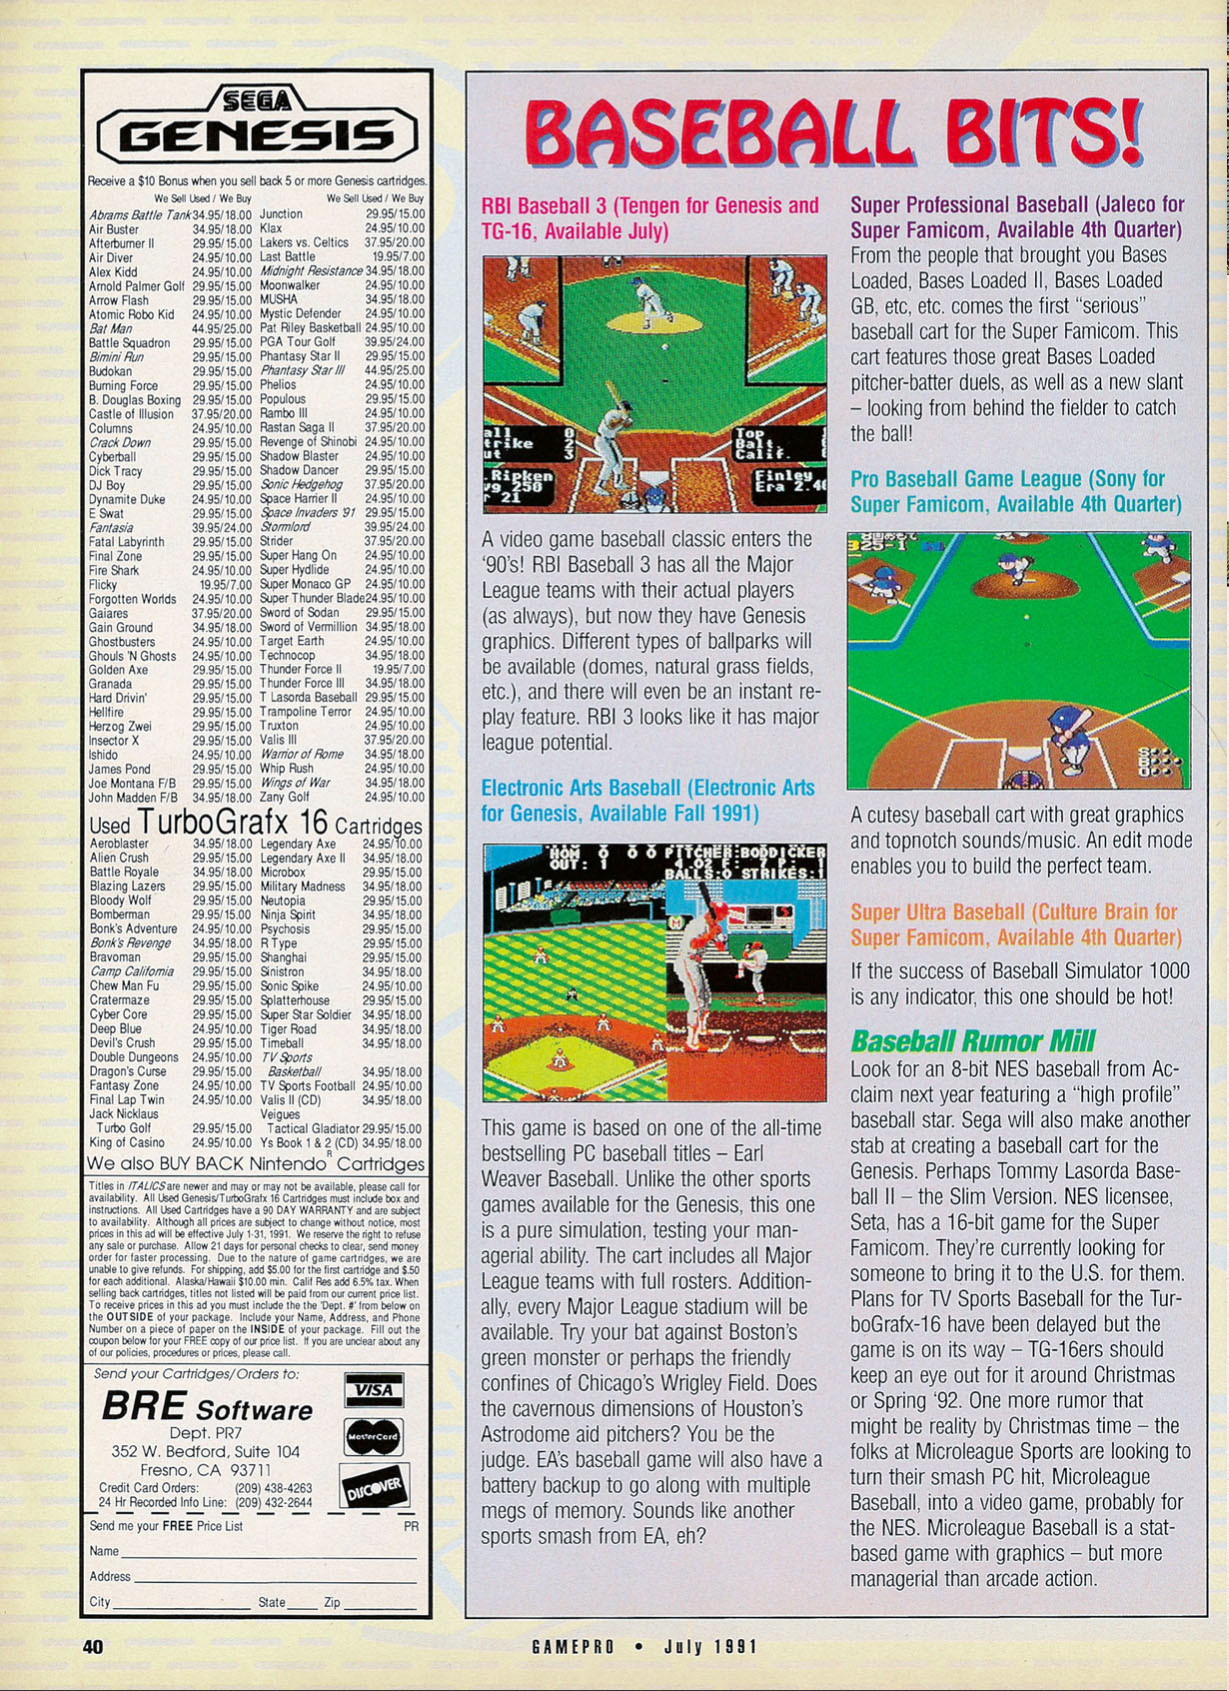 Baseball Blowout, GamePro July 1991 page 40